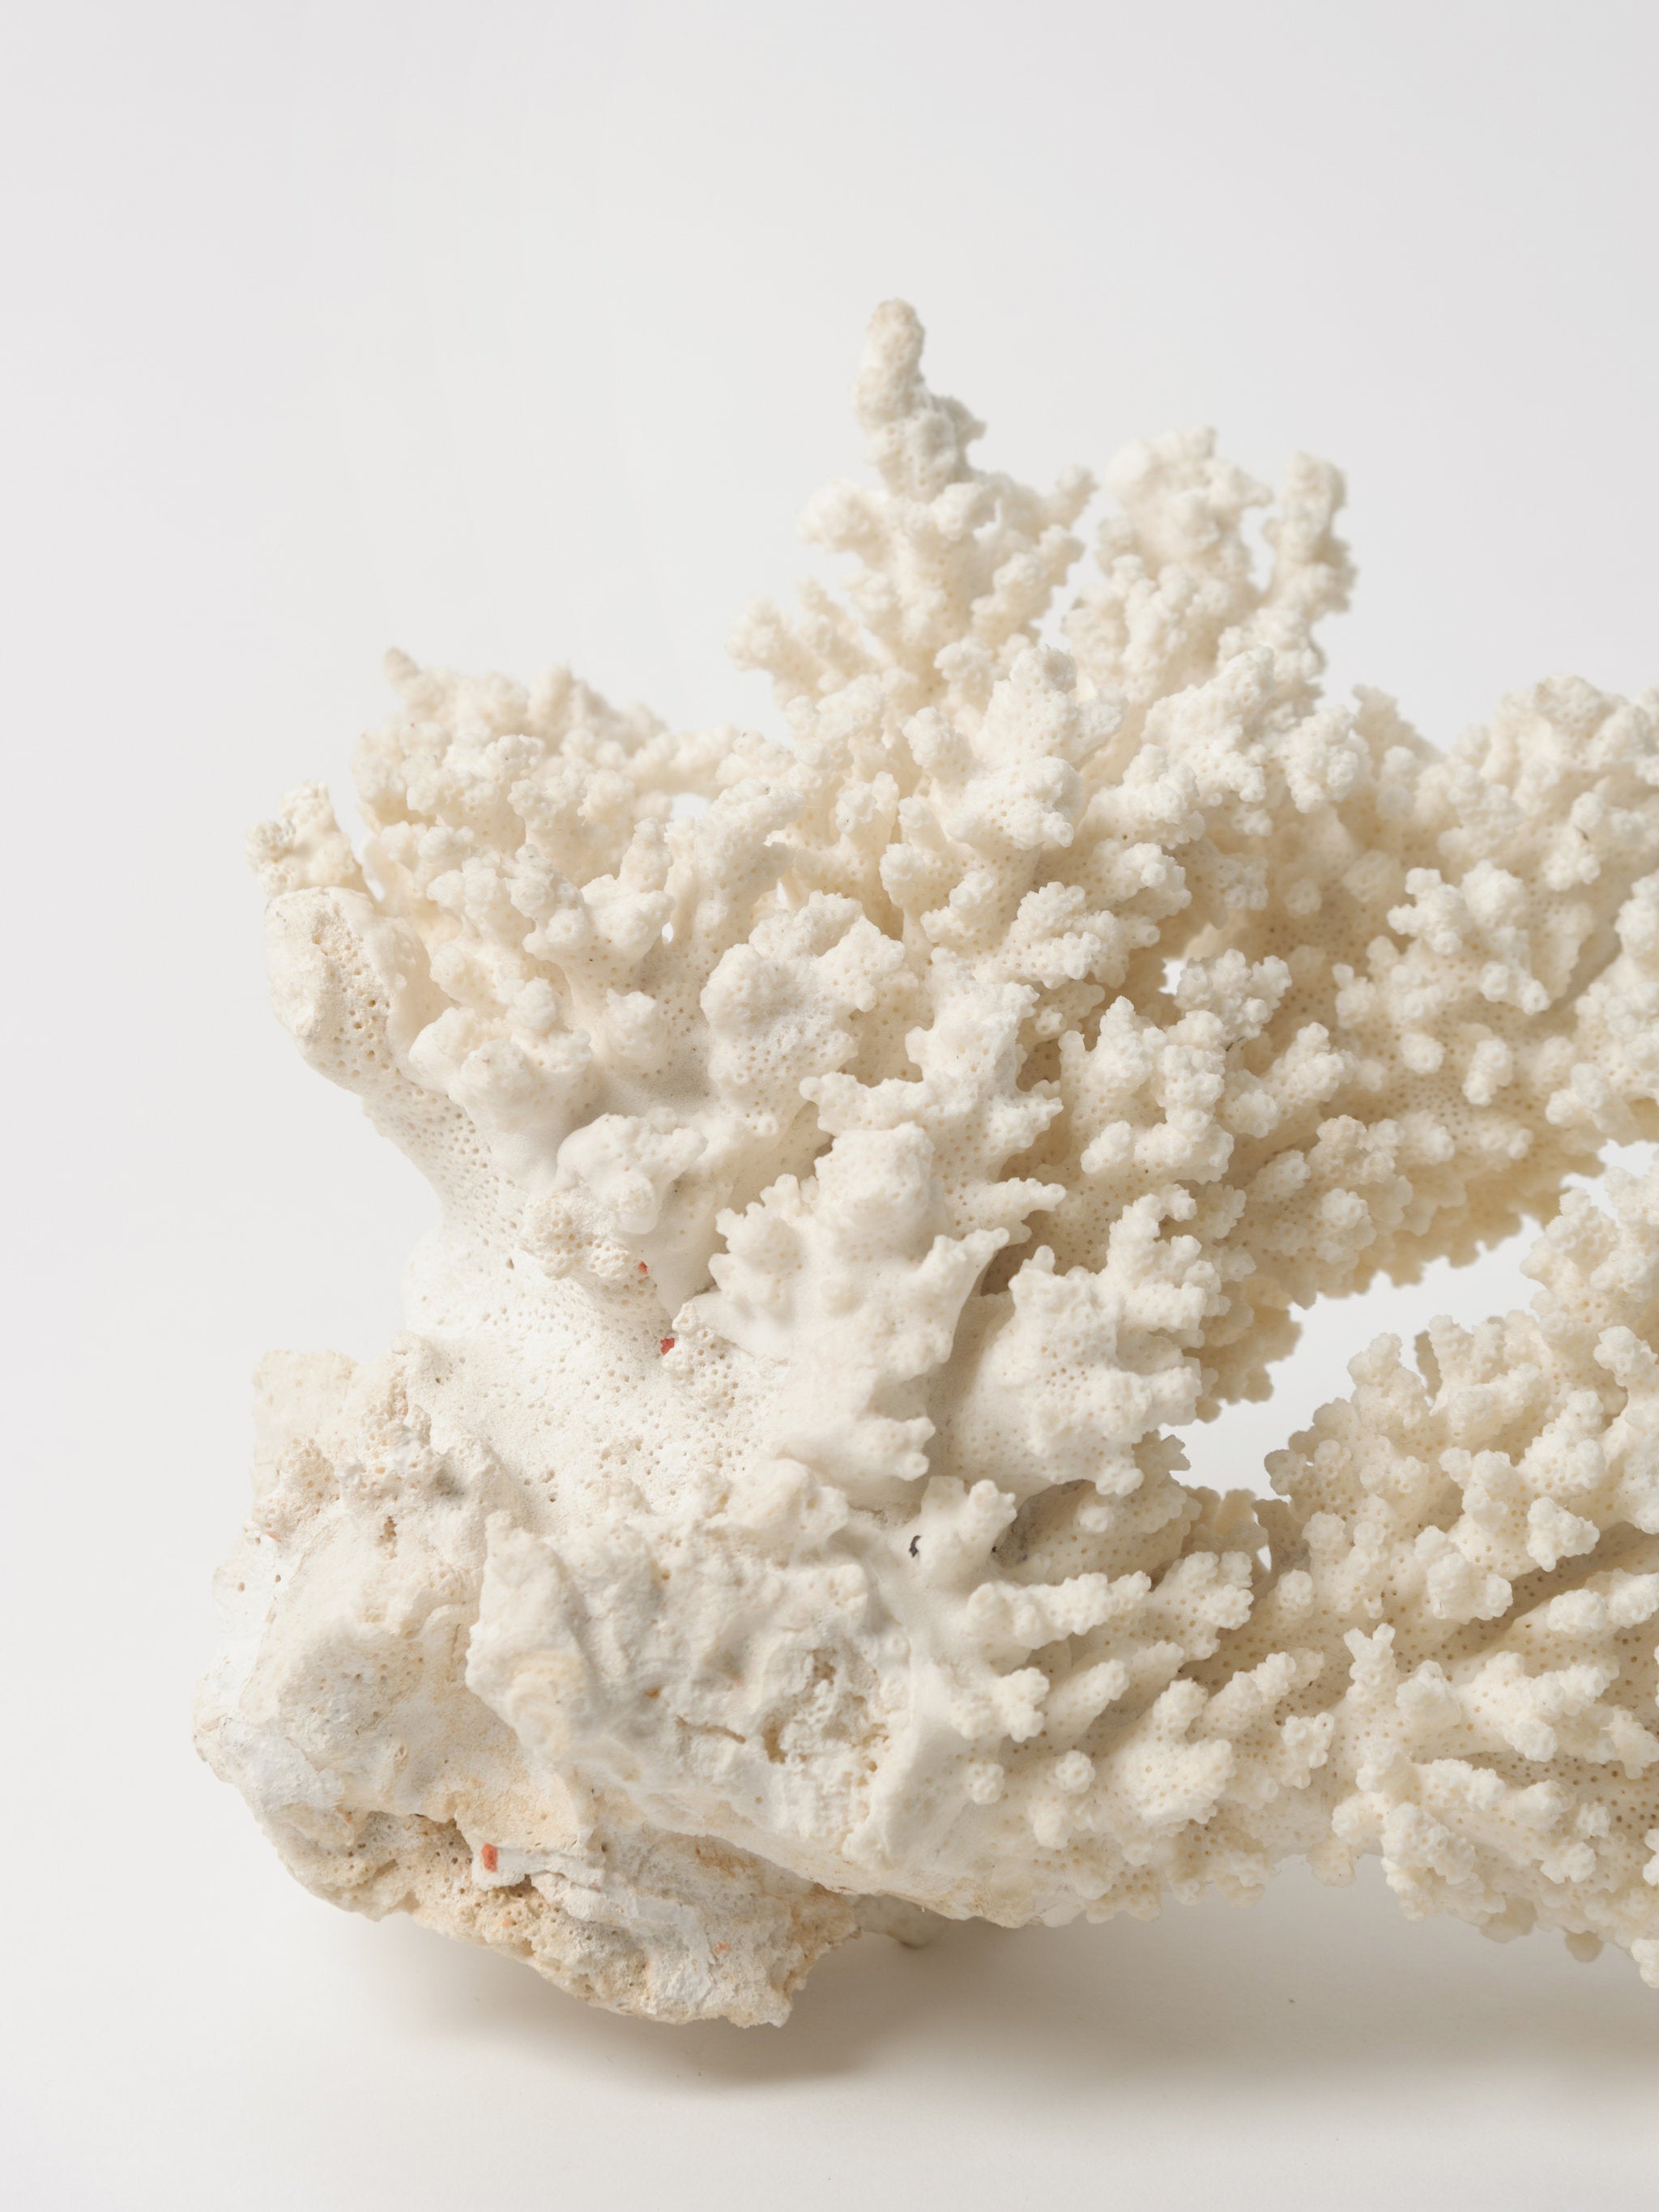 Coral Specimen -  Canada